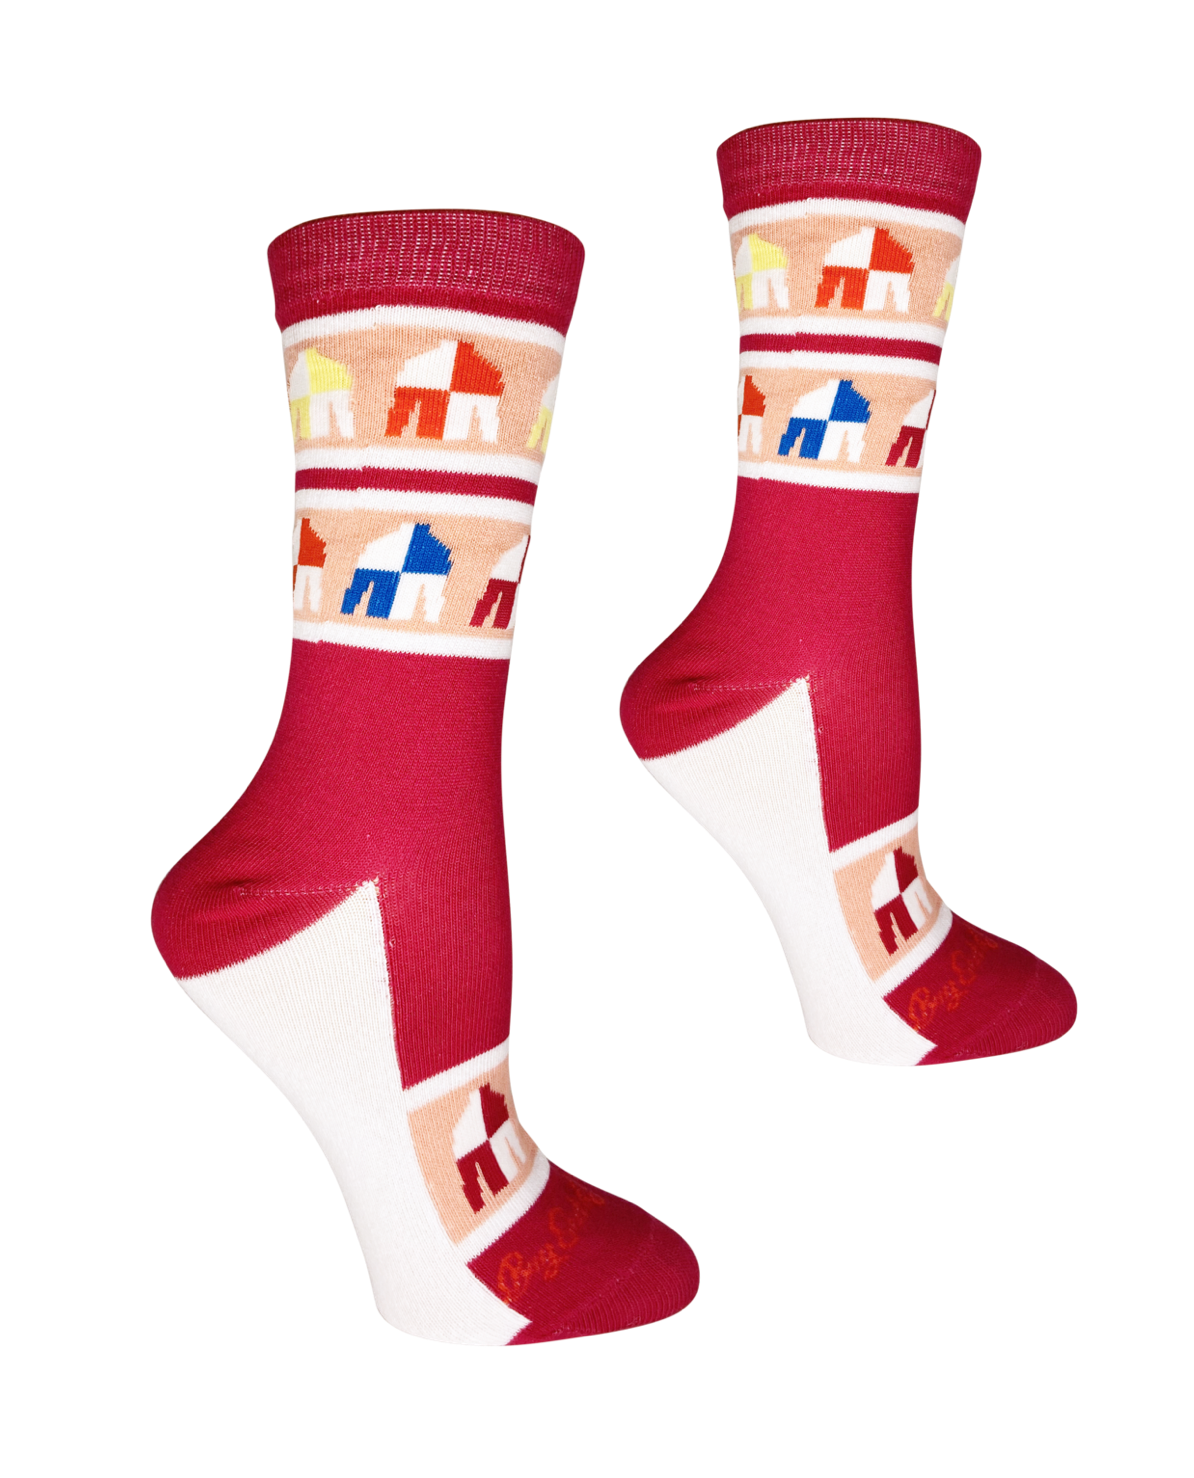 Women's Socks - Pink Derby Silks – Revelry Boutique Gallery